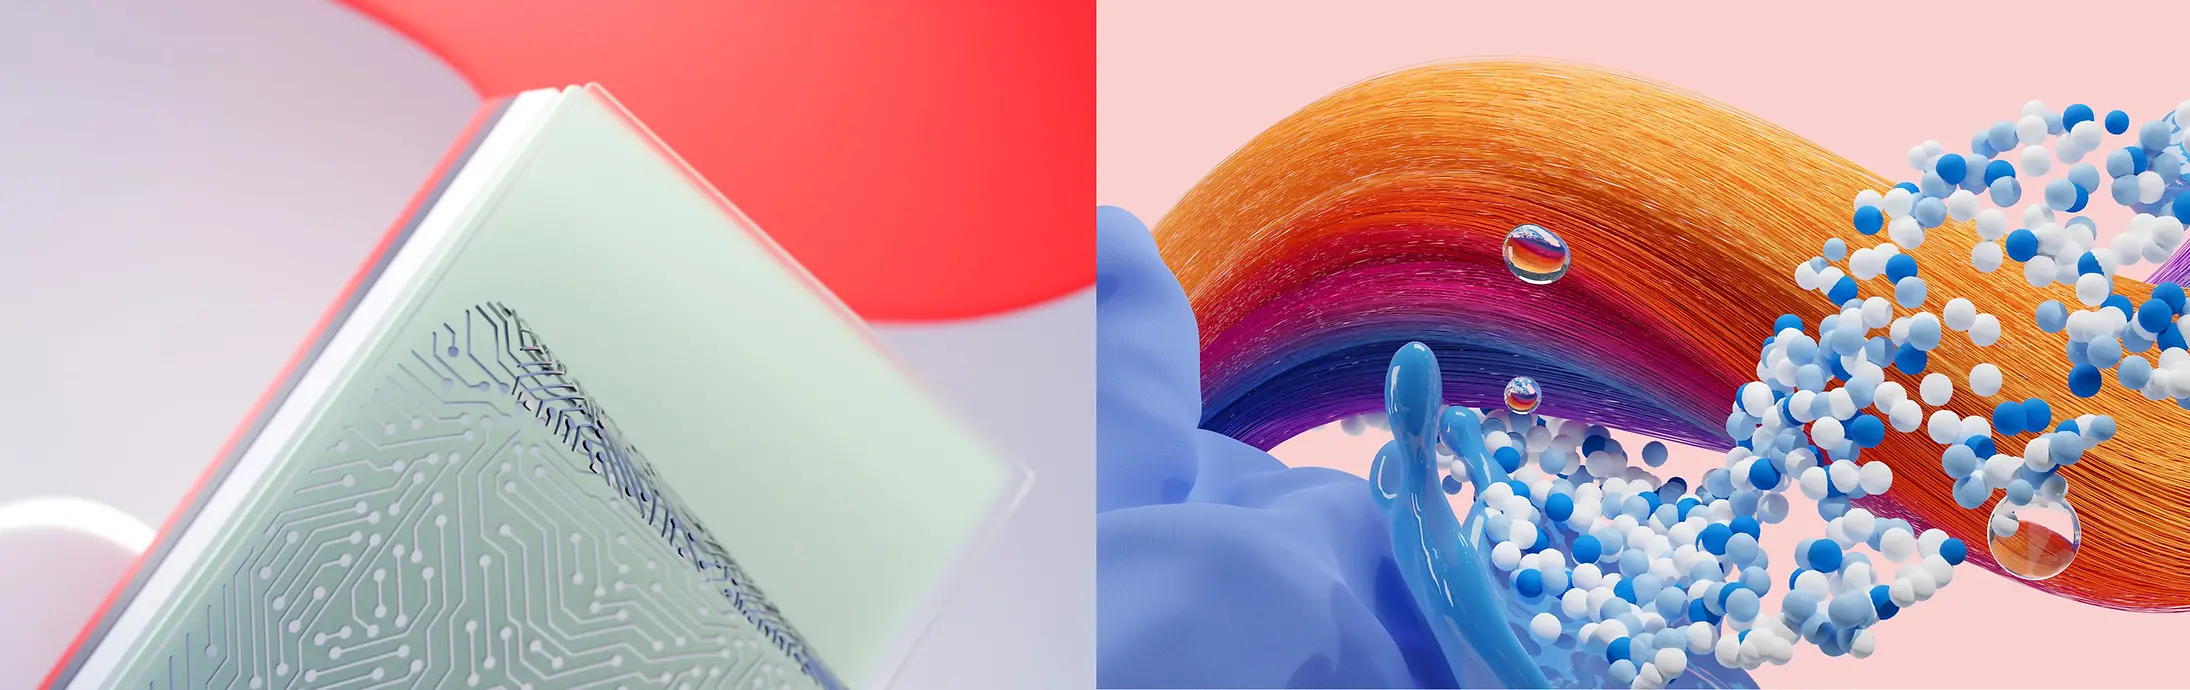 Imagen abstracta que representa las unidades de negocio de Henkel Adhesive Technologies y de Consumer Brands (Hair -Cabello- y Laundry & Home Care -Detergentes y Cuidado del Hogar-).